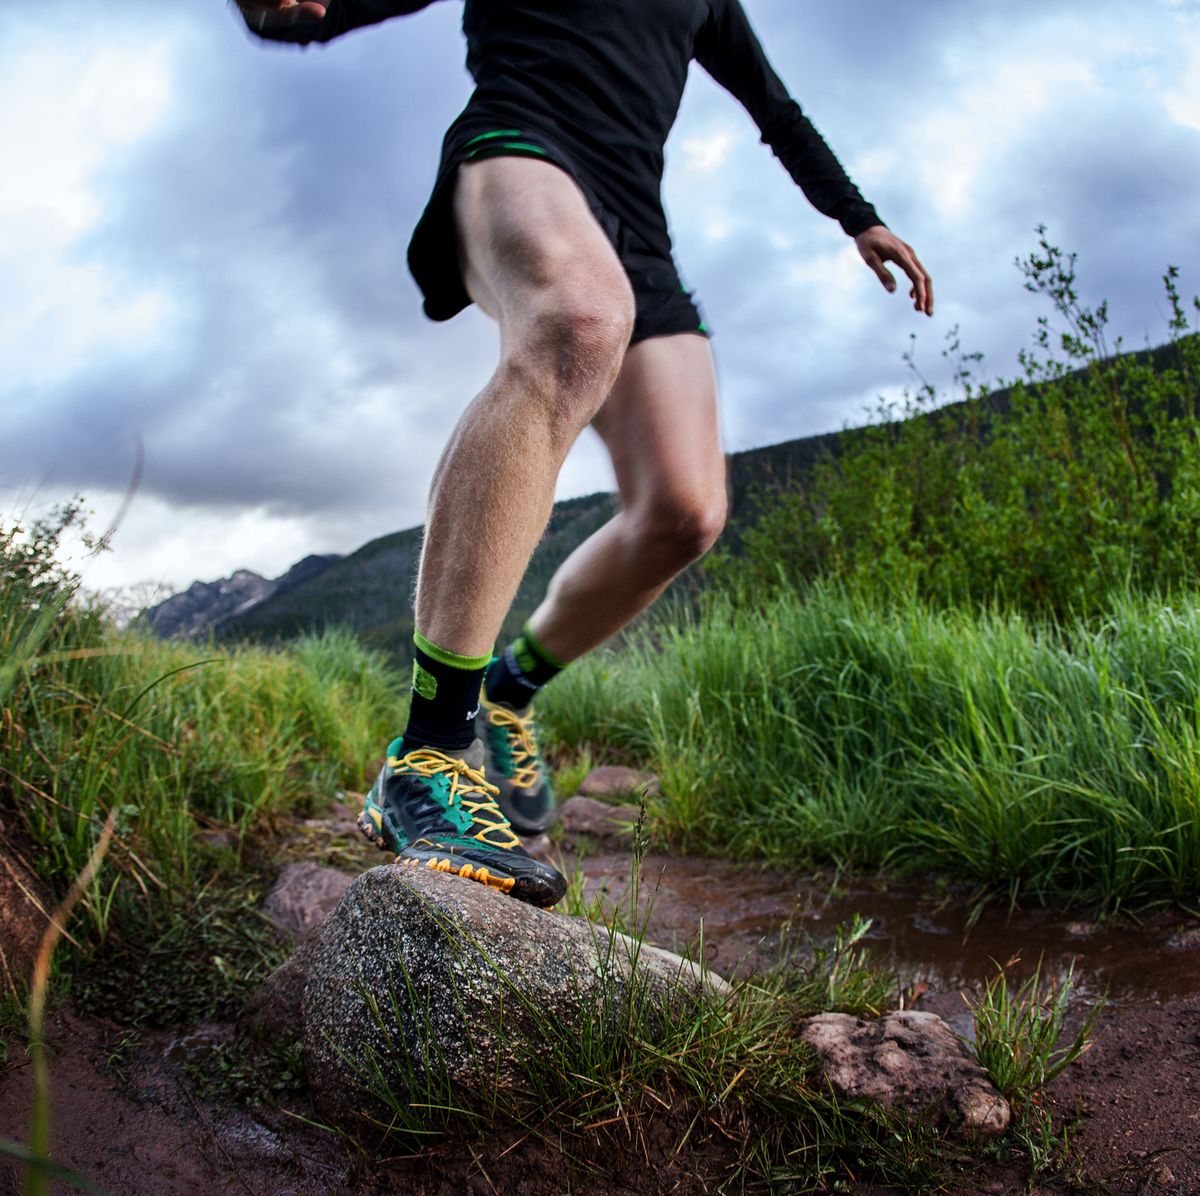 Mejores zapatillas de trail baratas: entrenar en montaña no tiene